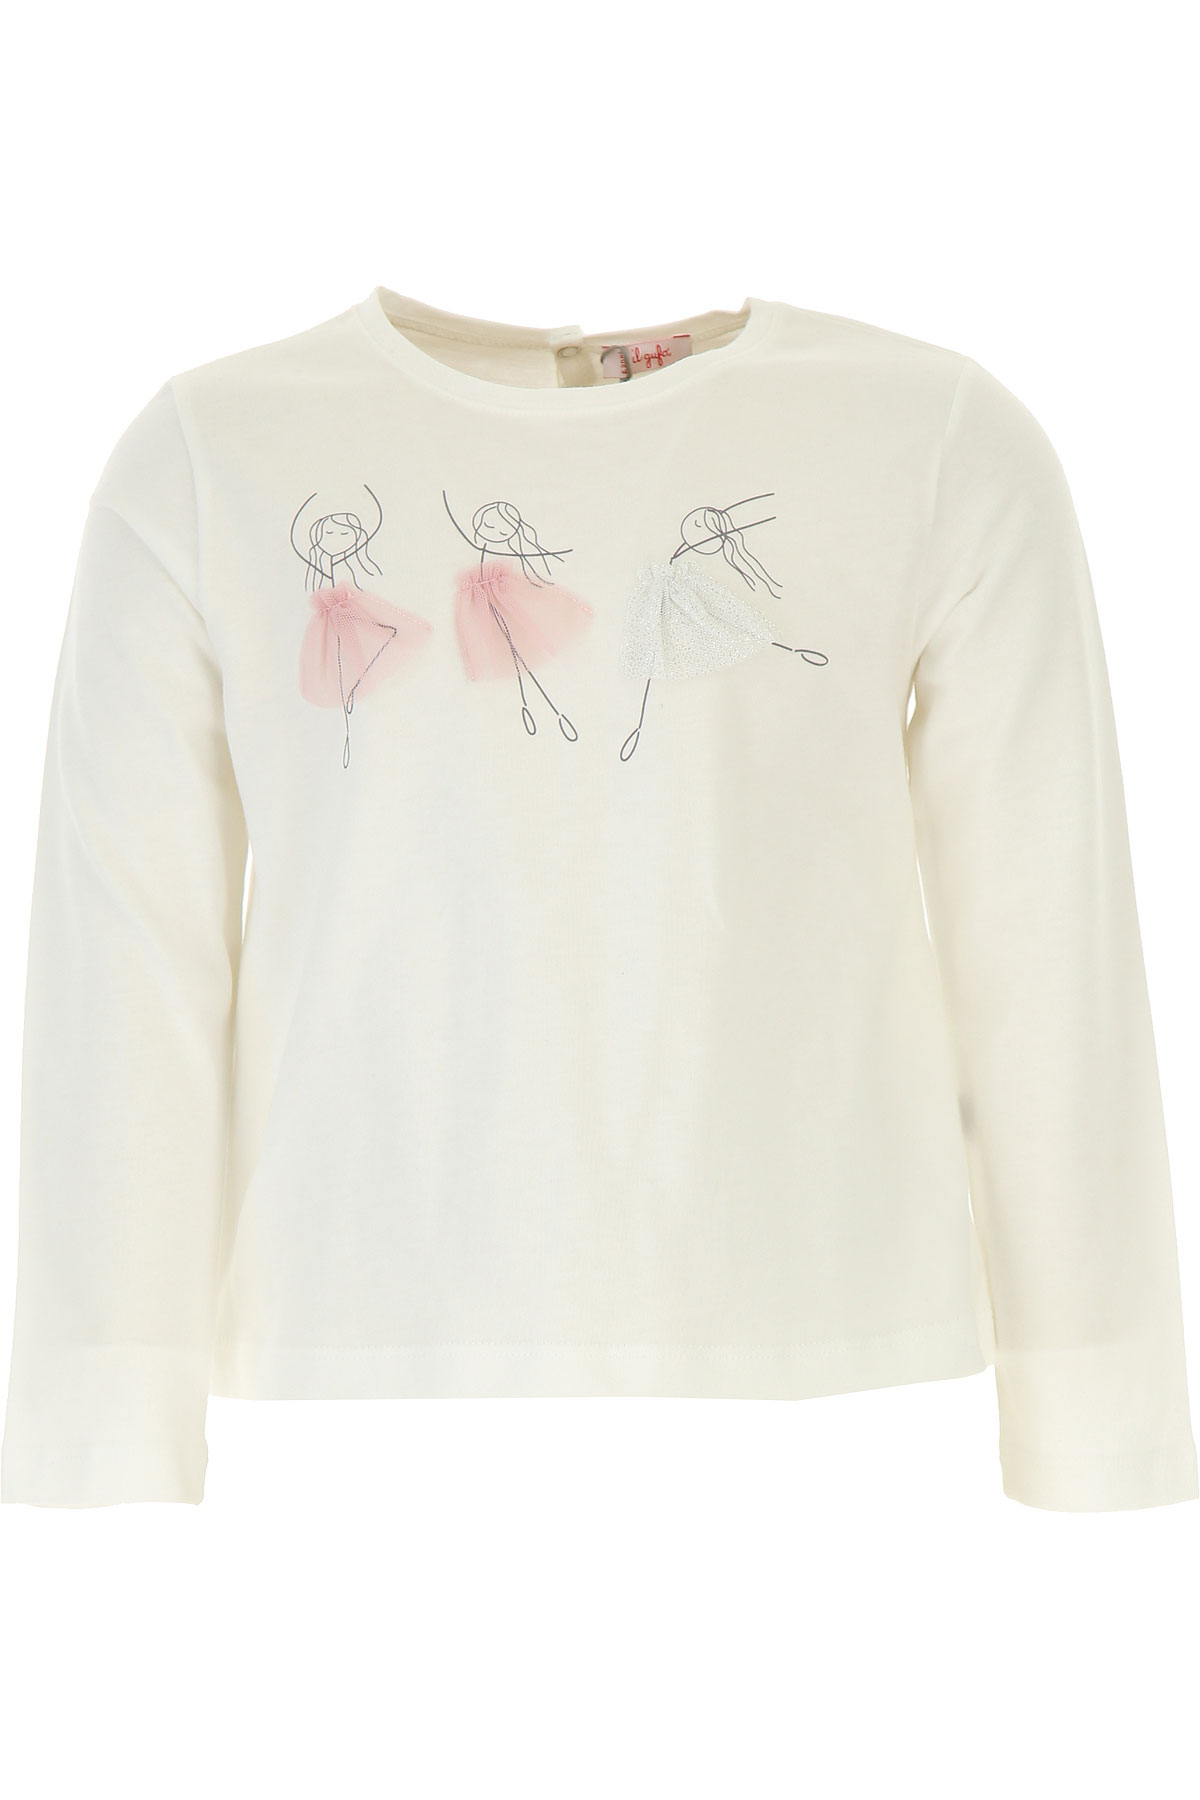 Il Gufo Kinder T-Shirt für Mädchen Günstig im Sale, Milchfarben, Baumwolle, 2017, 10Y 3Y 4Y 6Y 8Y